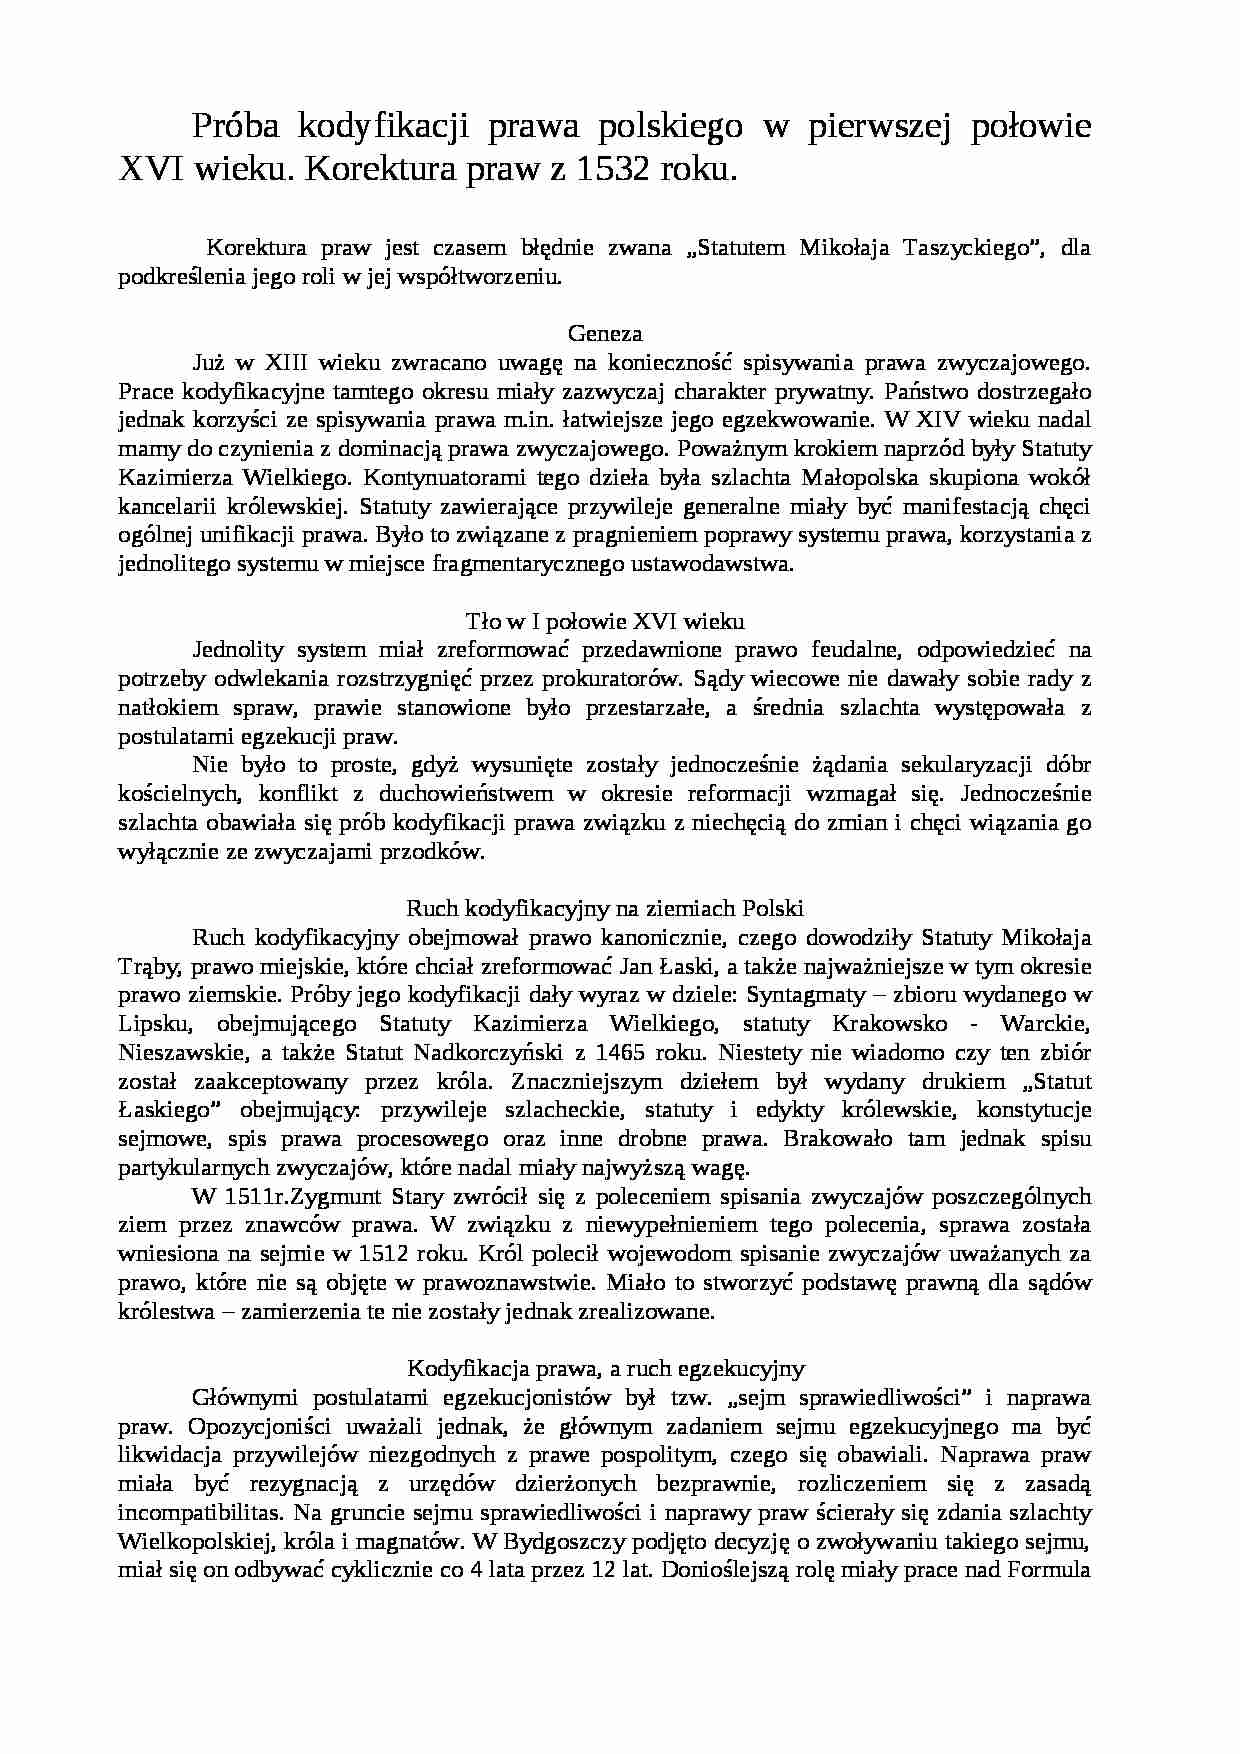  Próba kodyfikacji prawa polskiego w pierwszej połowie XVI wieku-opracowanie - strona 1